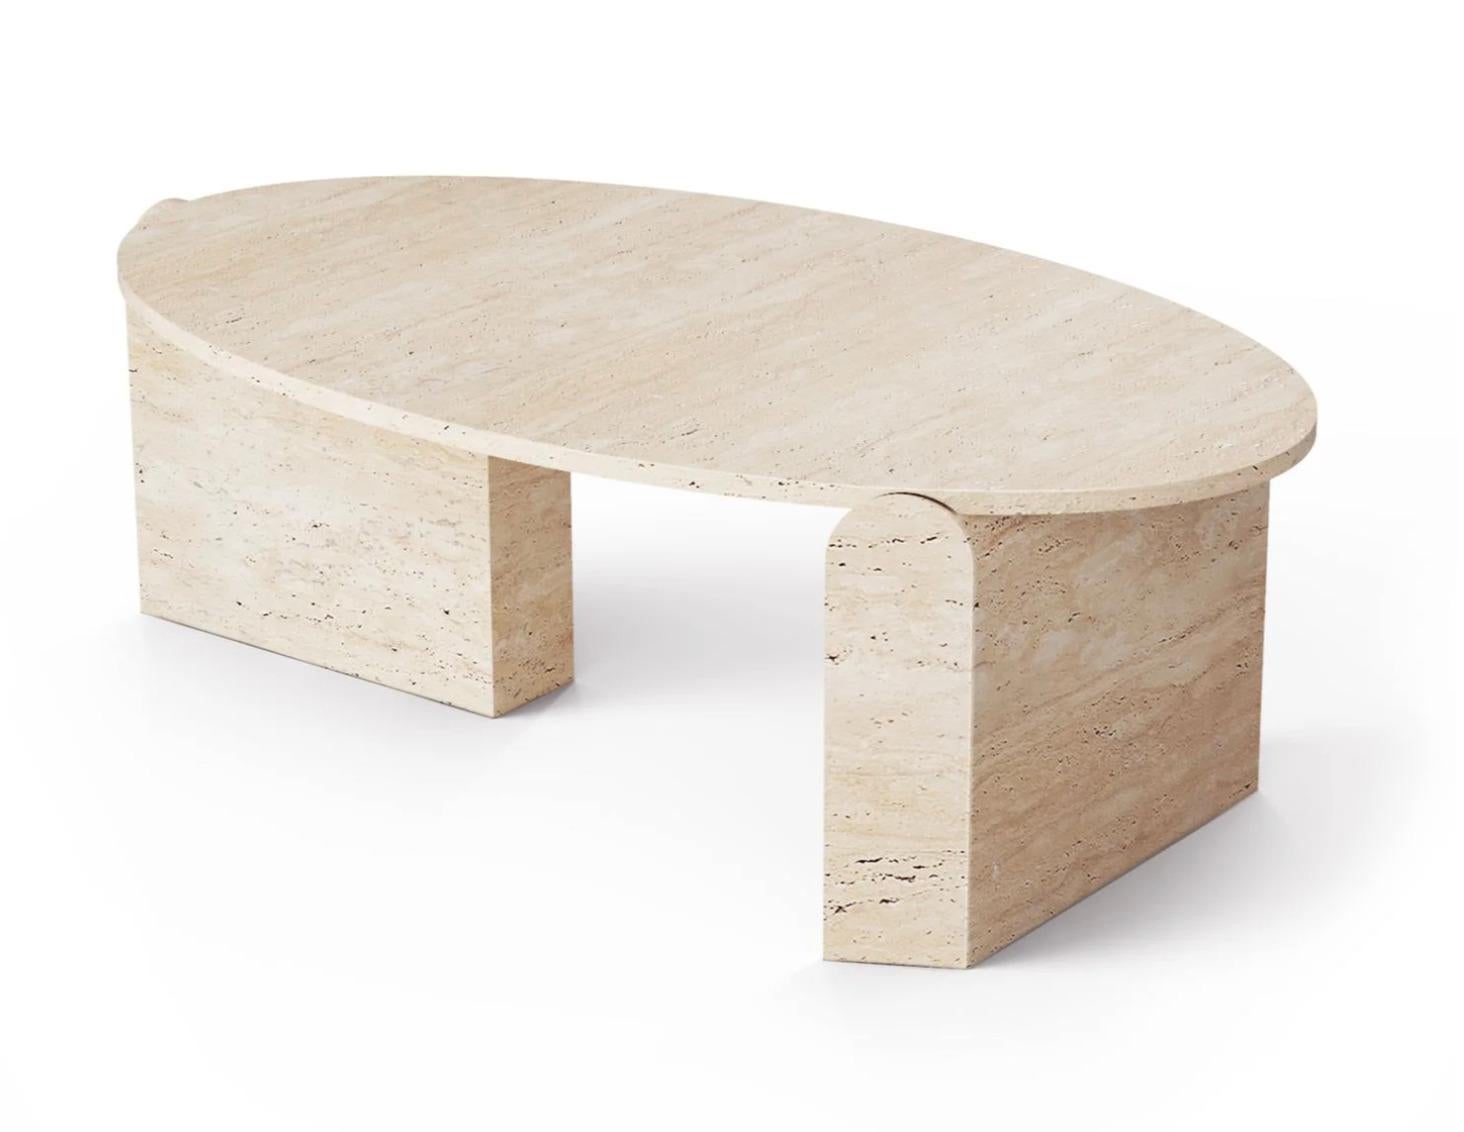 La table centrale ovale Jean est unique dans sa conception avec une inspiration Organic Modern. 
La pierre naturelle n'est pas reproductible dans son individualité, c'est pourquoi chaque table centrale Jean est unique, mettant en valeur les veines